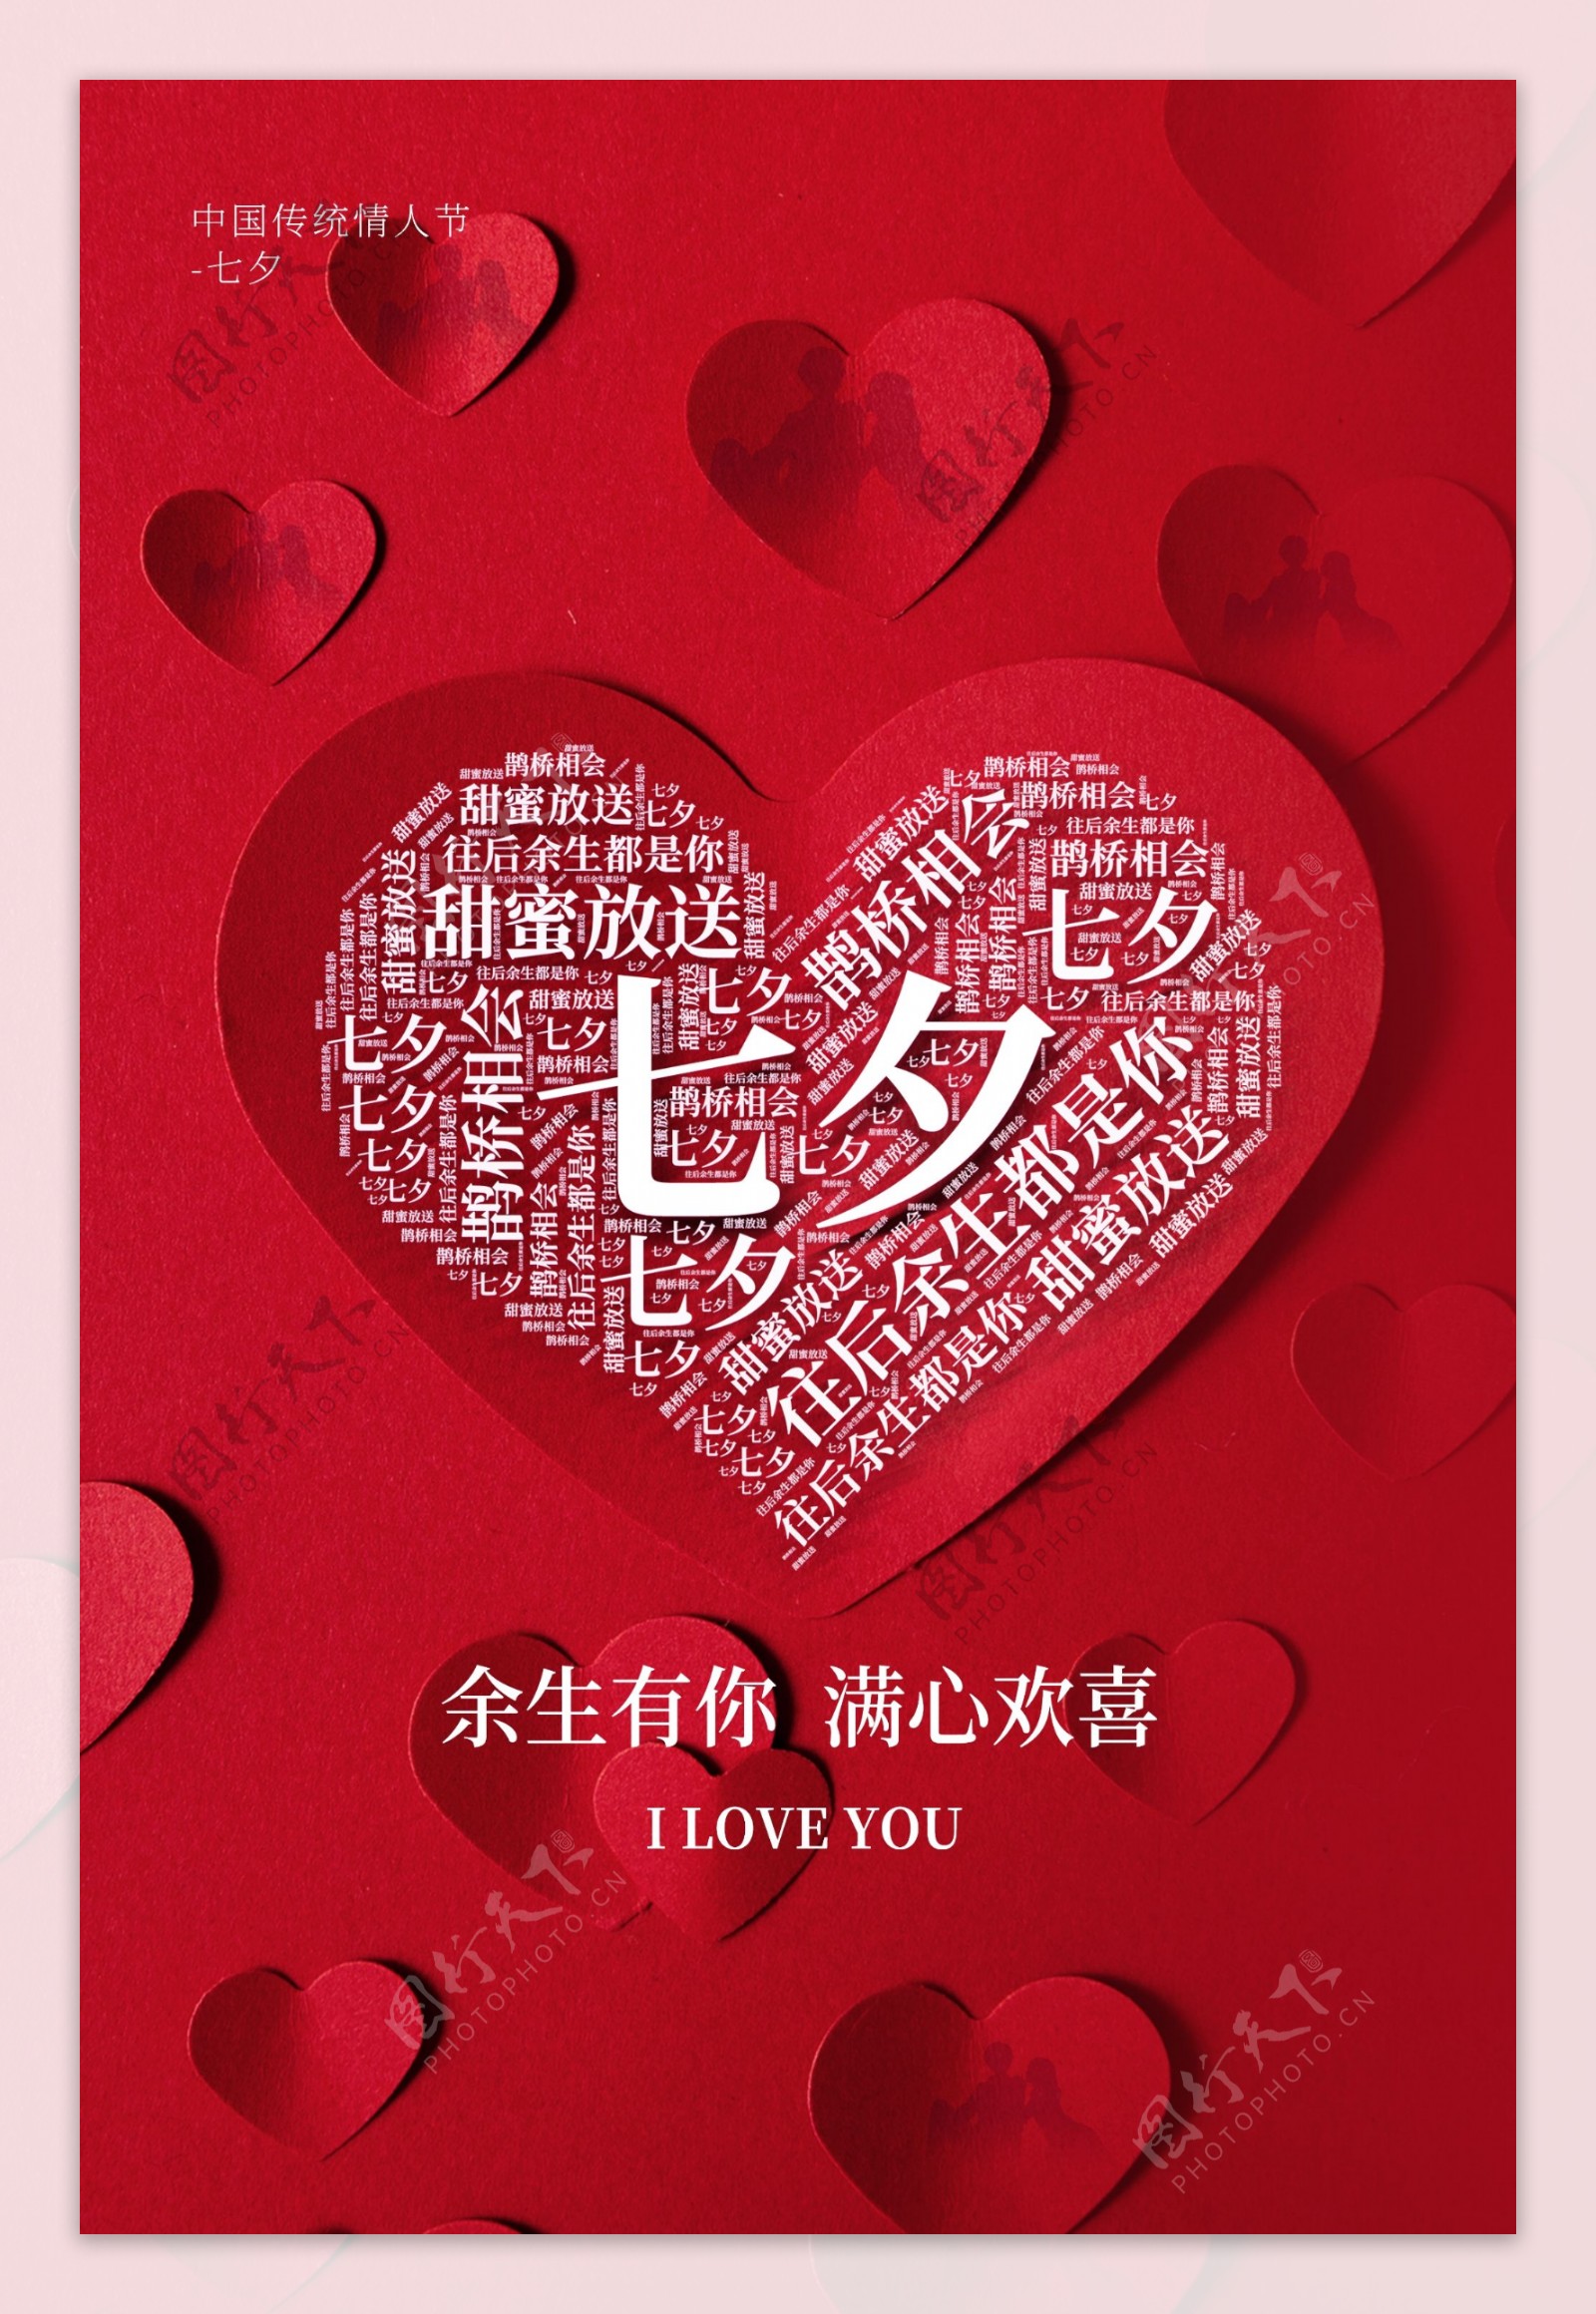 七夕节日传统活动宣传海报素材图片